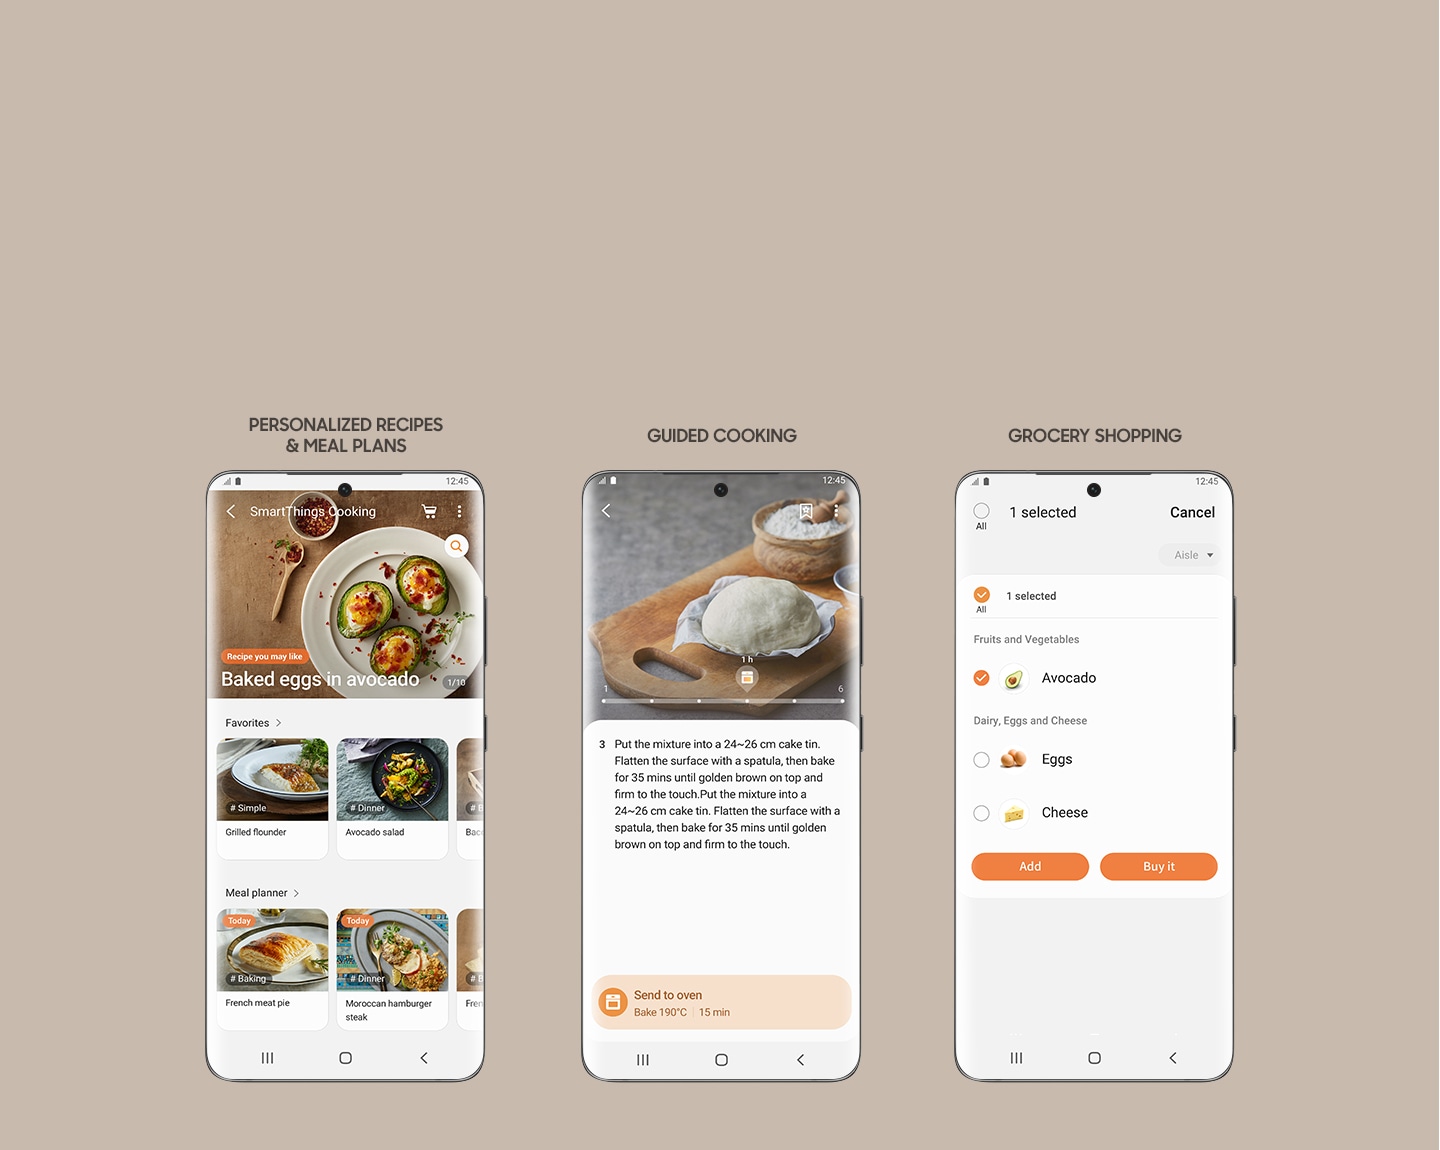 Показывает 3 экрана смартфона из приложения SmartThings Cooking, которое позволяет вам получать доступ к персонализированным рецептам и планам питания, просматривать пошаговые инструкции по приготовлению и создавать список покупок для покупки ингредиентов.